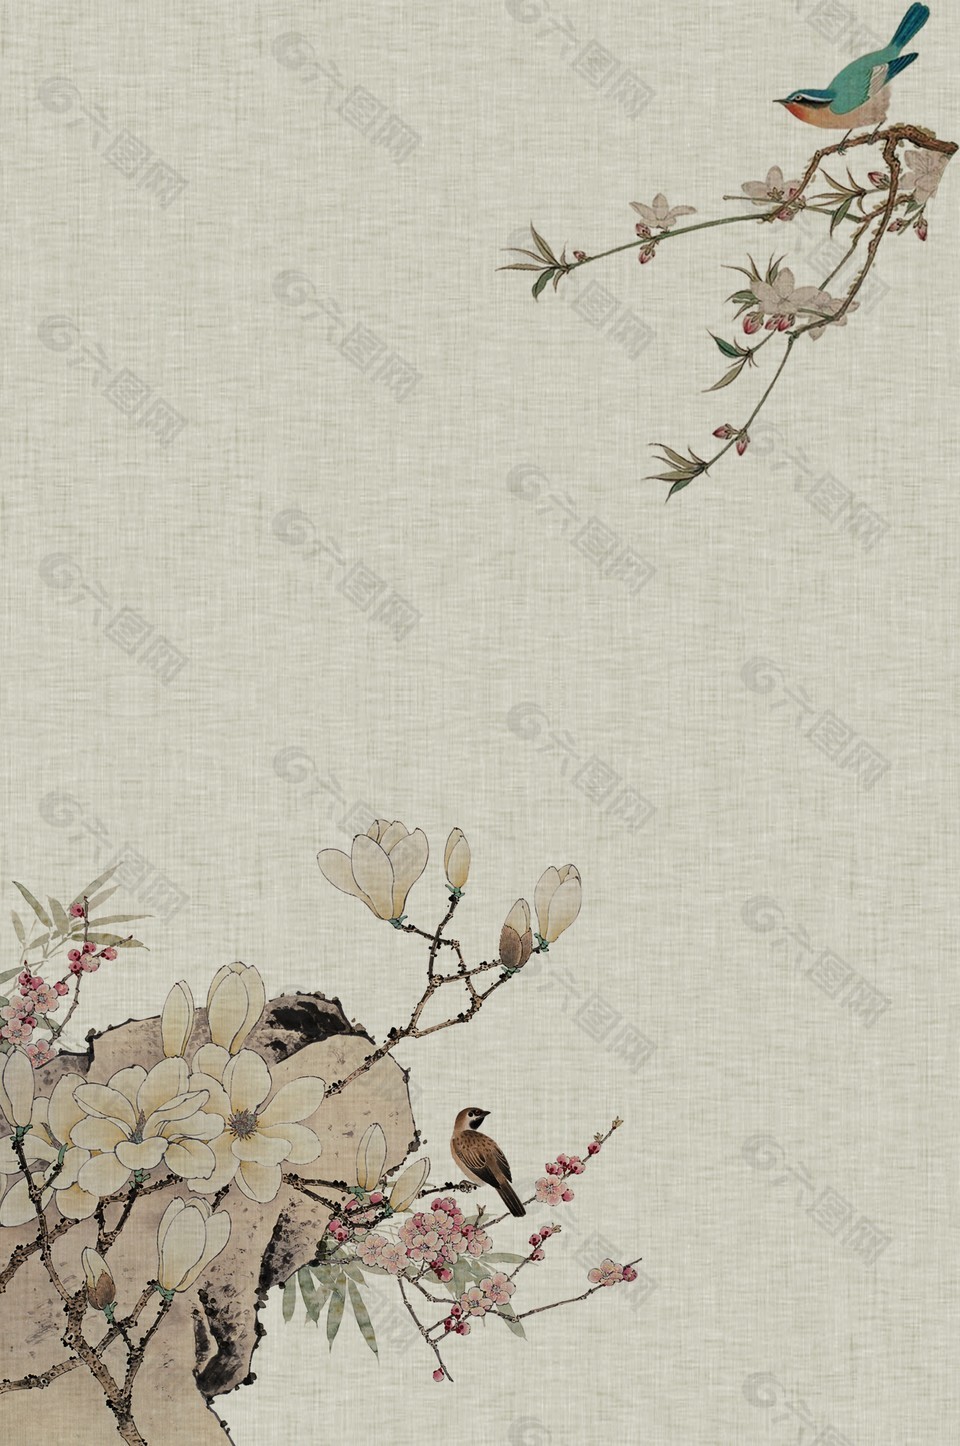 中國古風工筆畫花鳥圖素材下載